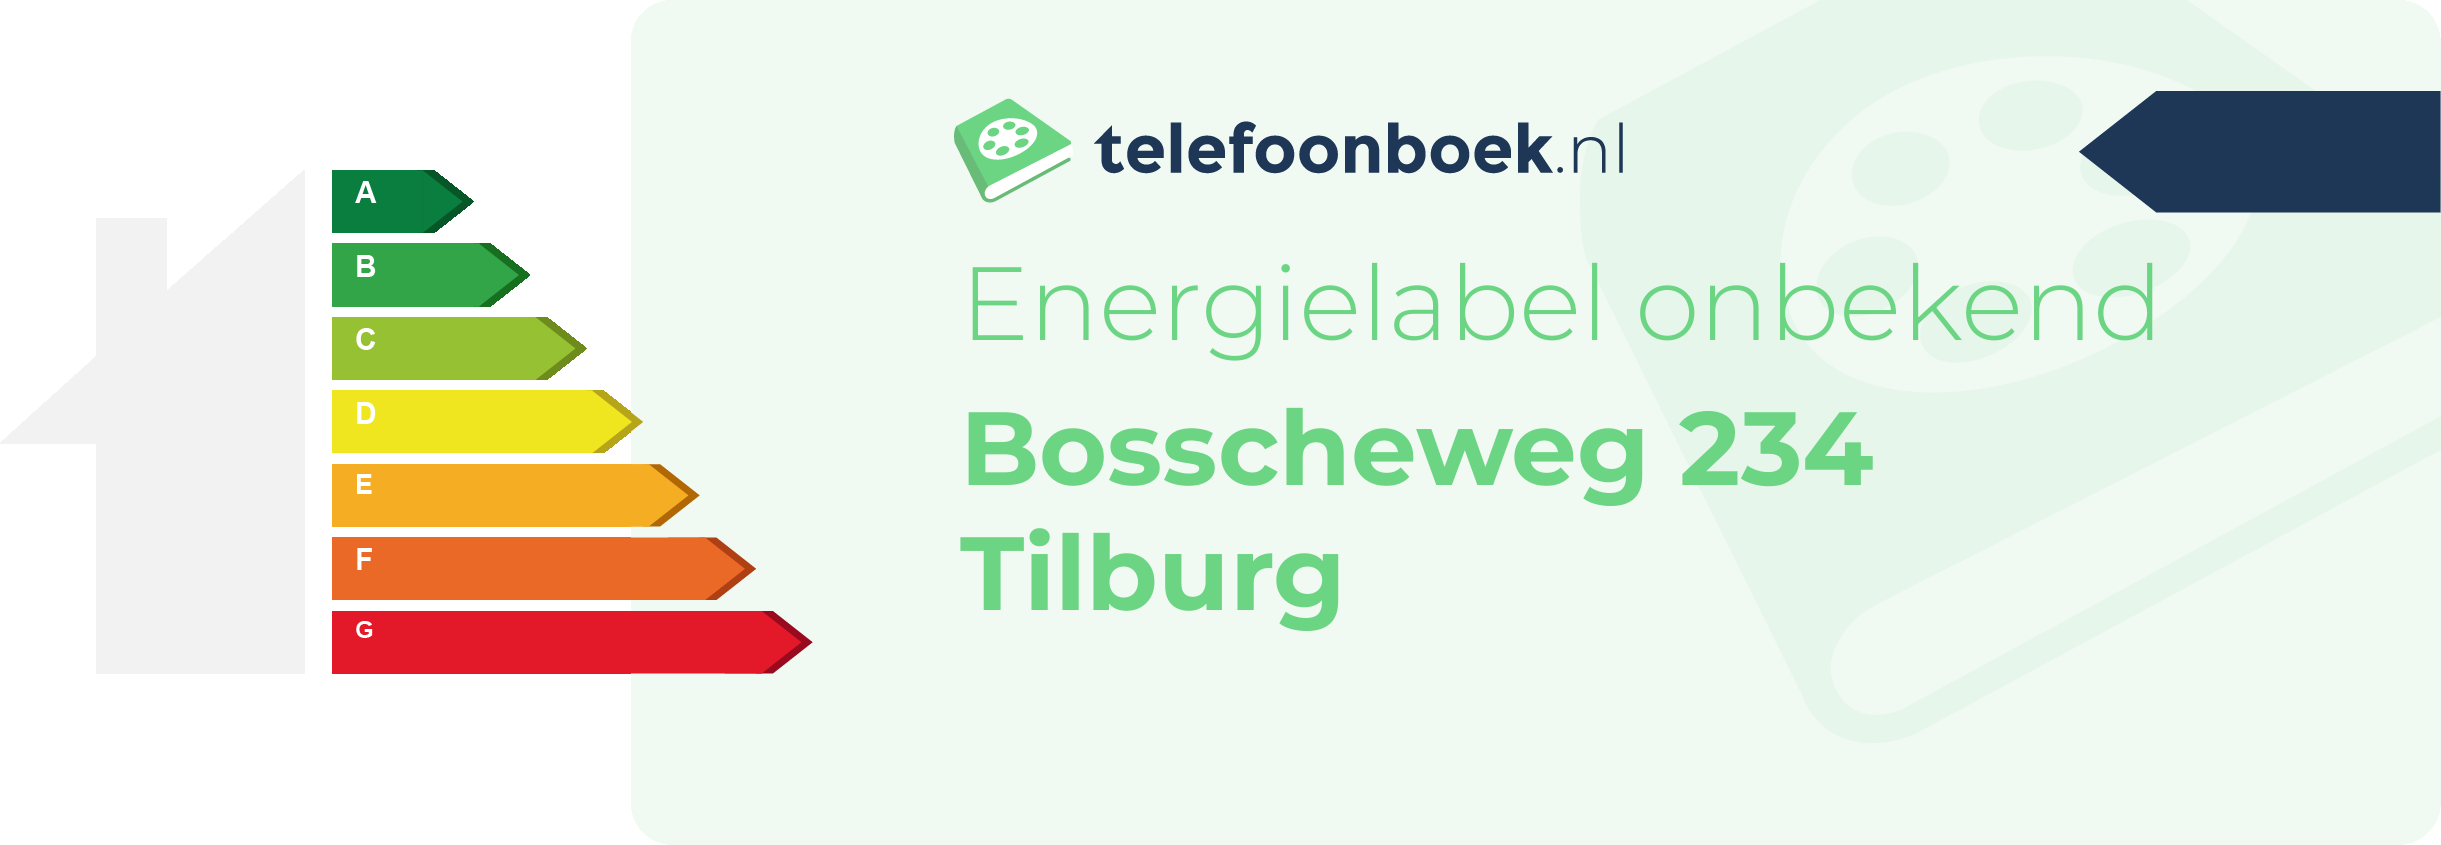 Energielabel Bosscheweg 234 Tilburg